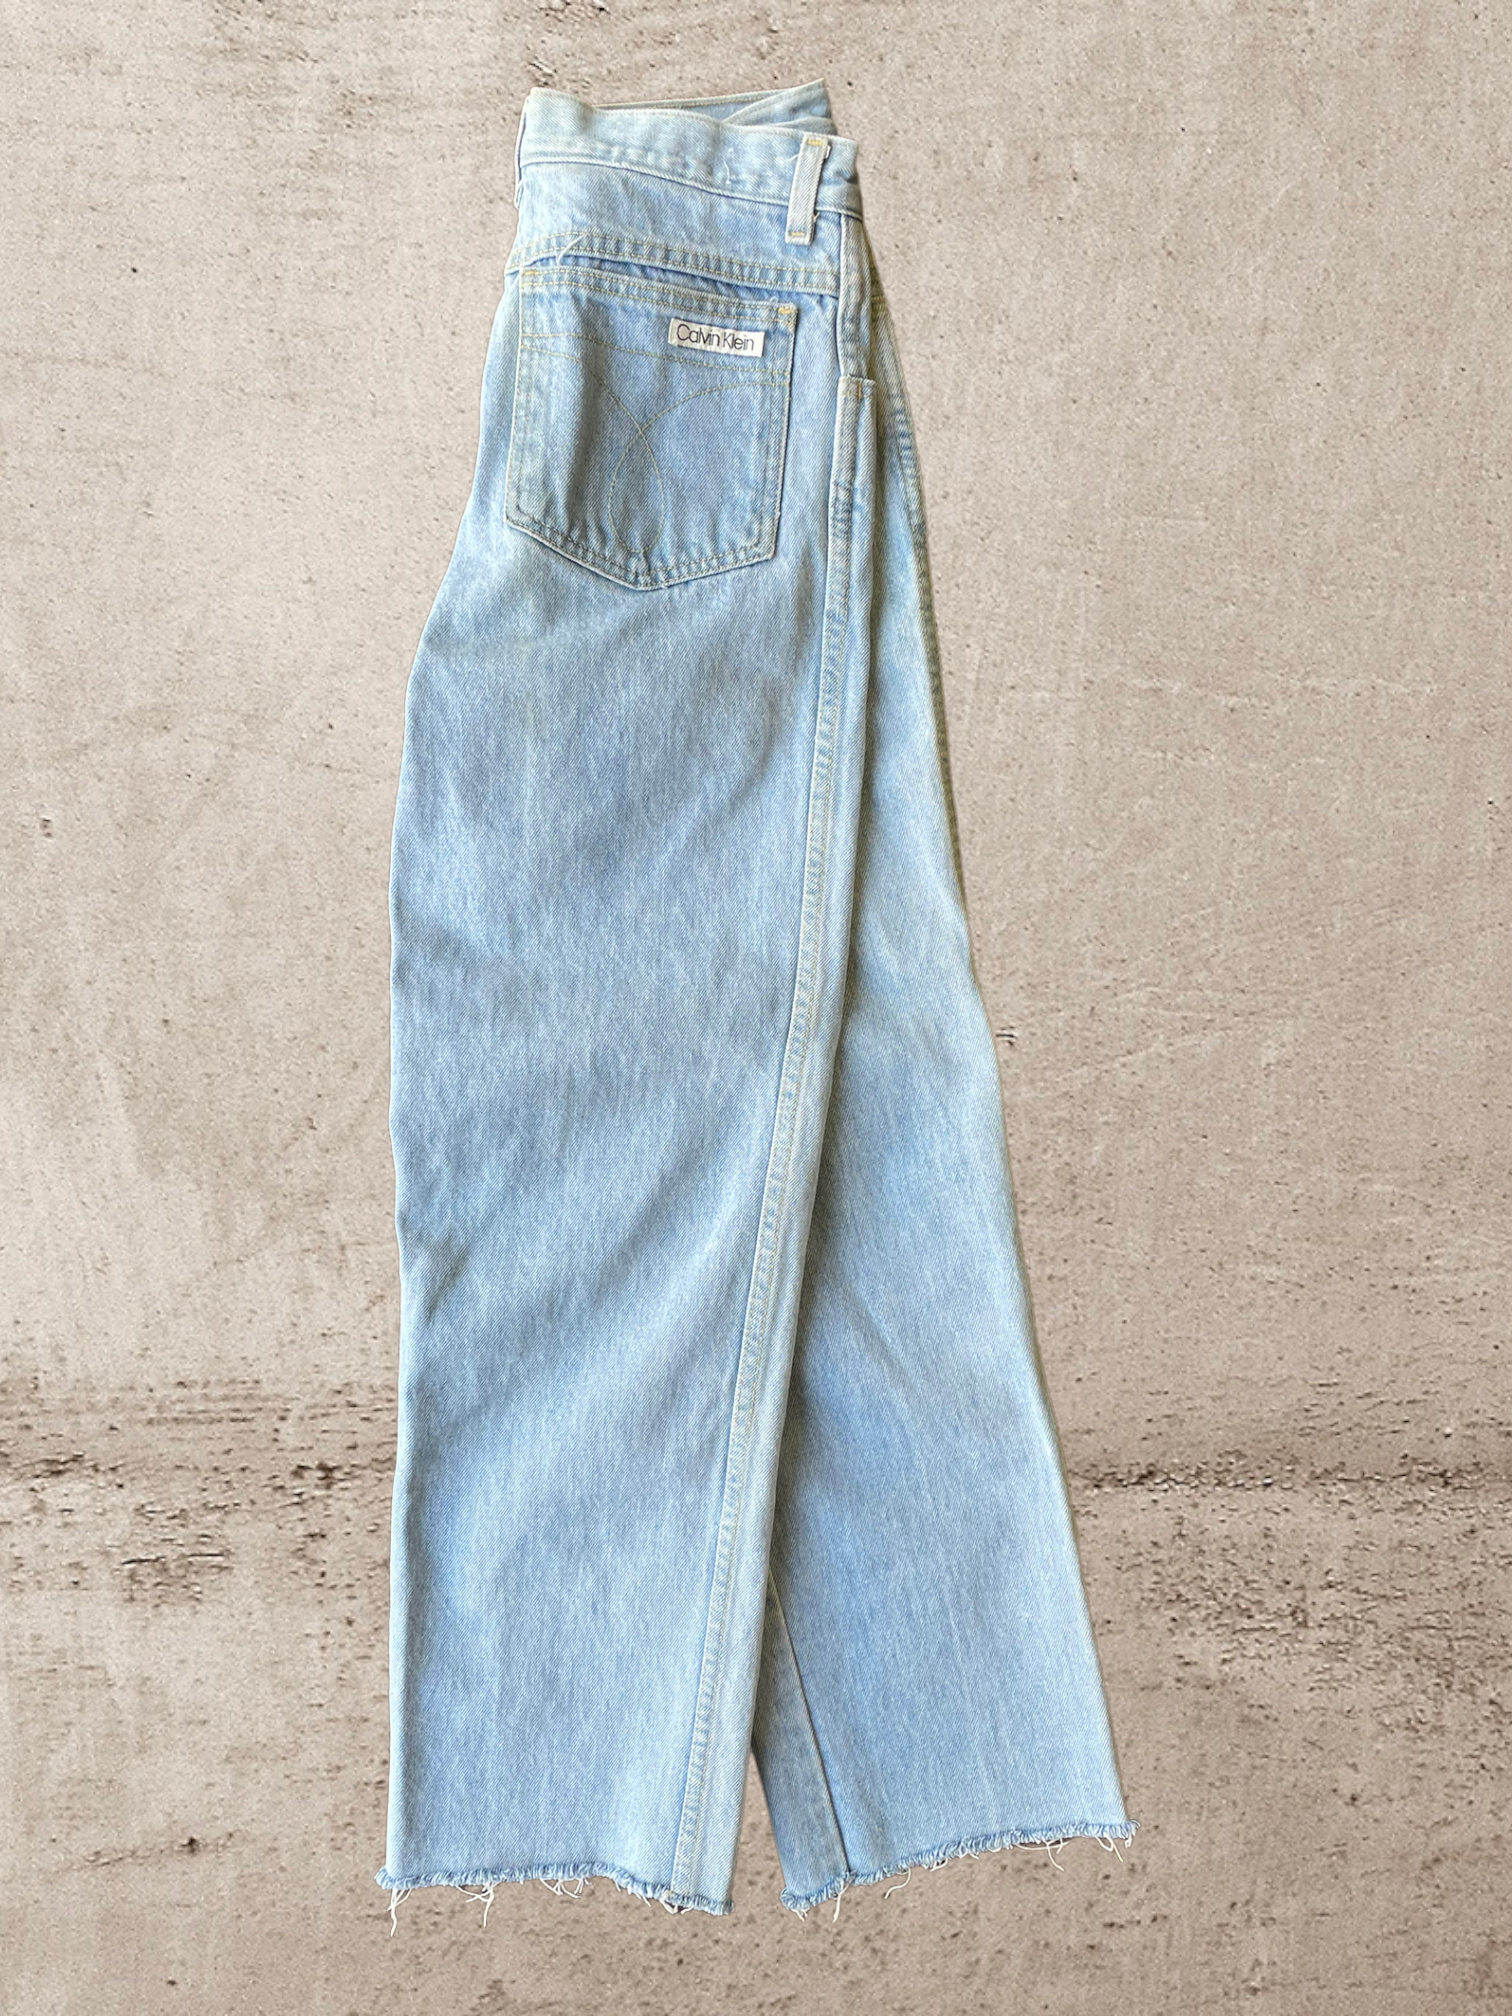 90s Calvin Klein Light Wash Jeans - 28x28